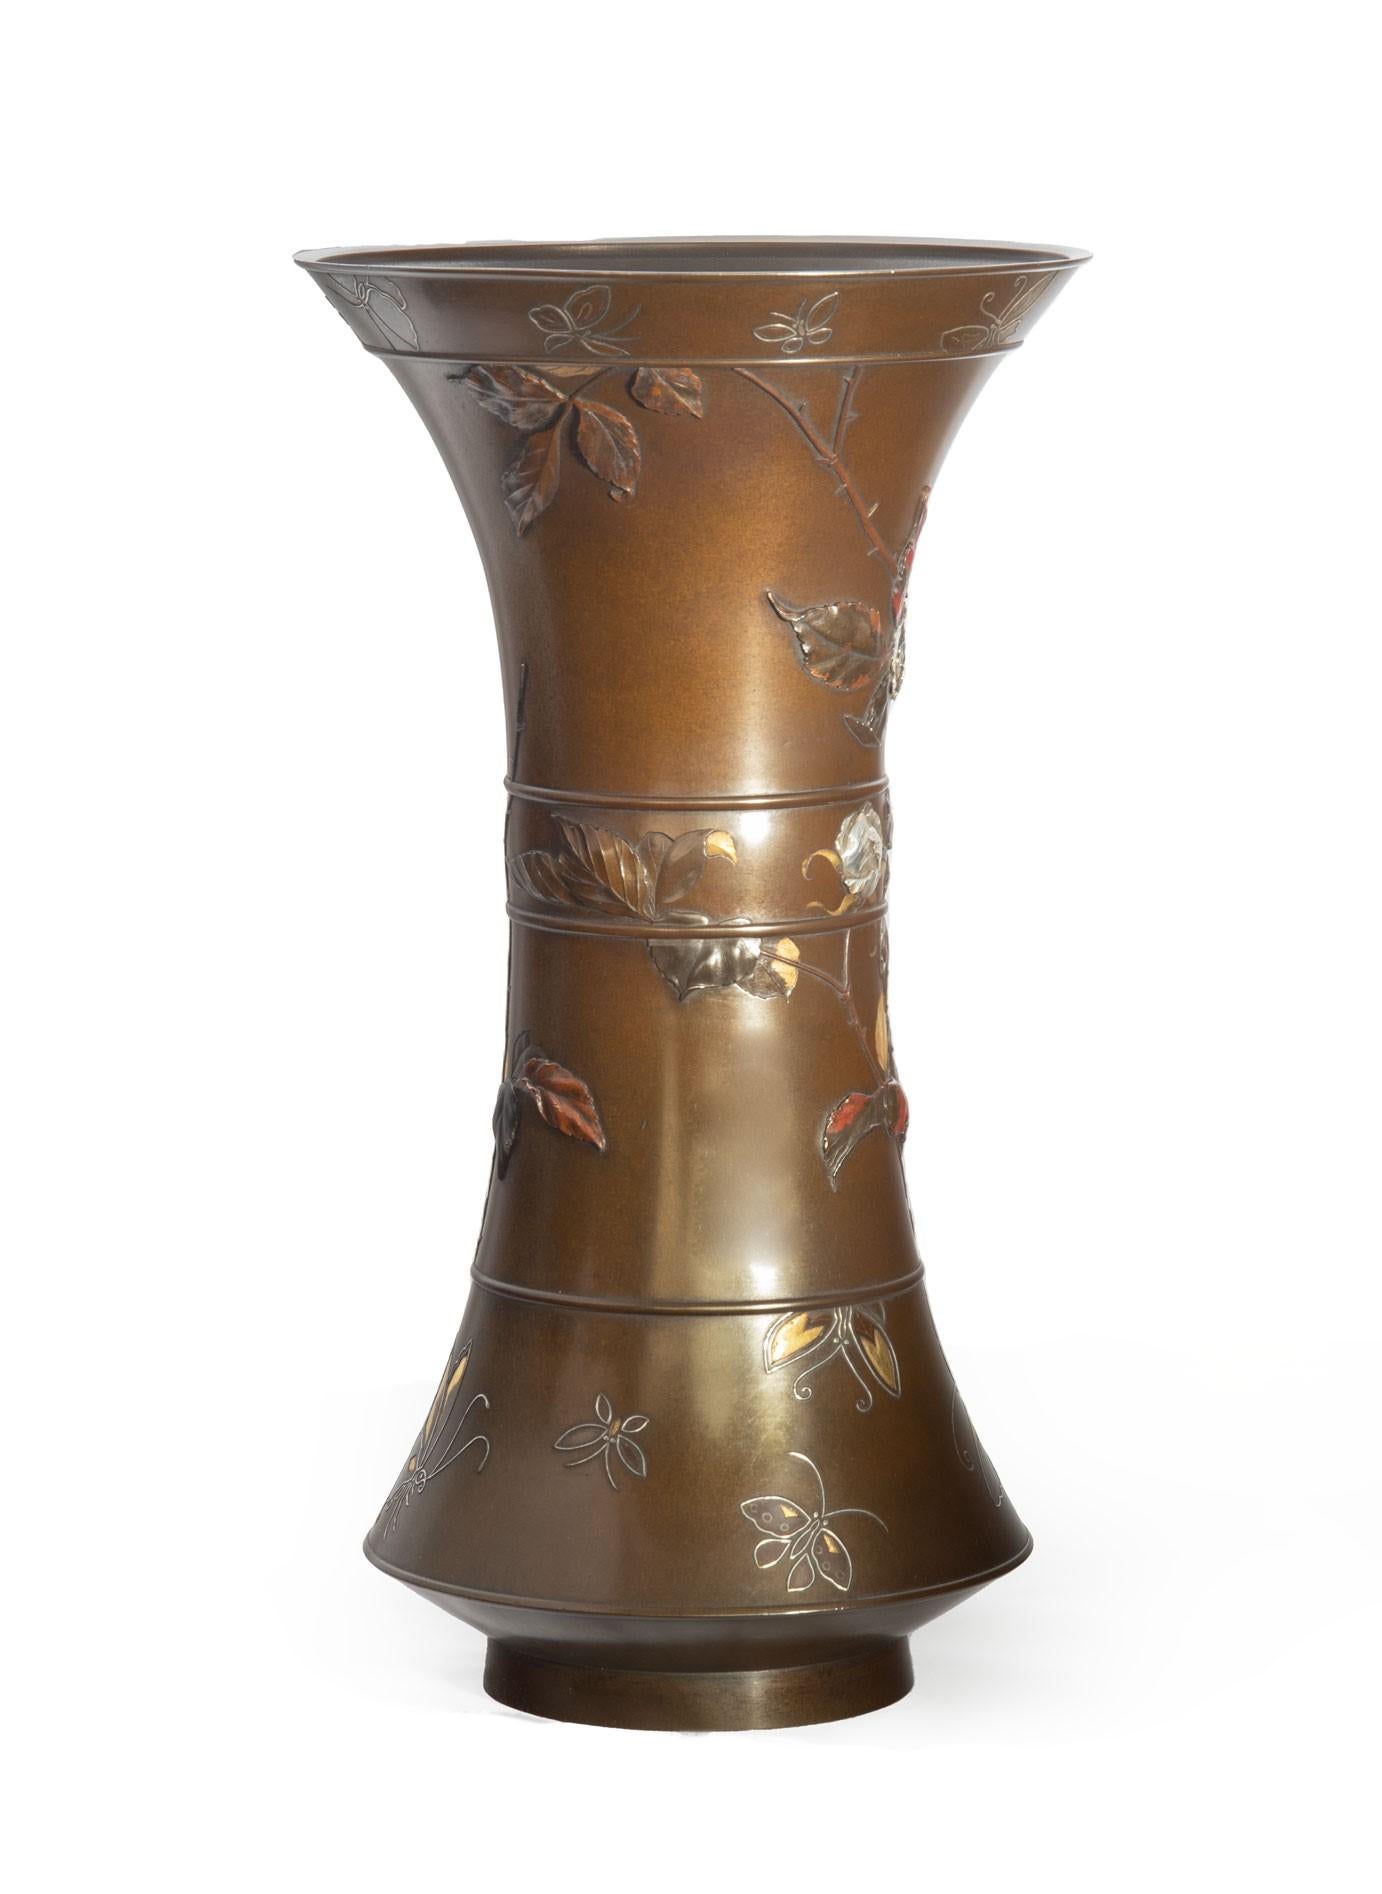 19th Century Large Japanese Bronze and Mixed Metal Vase, Suzuki Chokichi